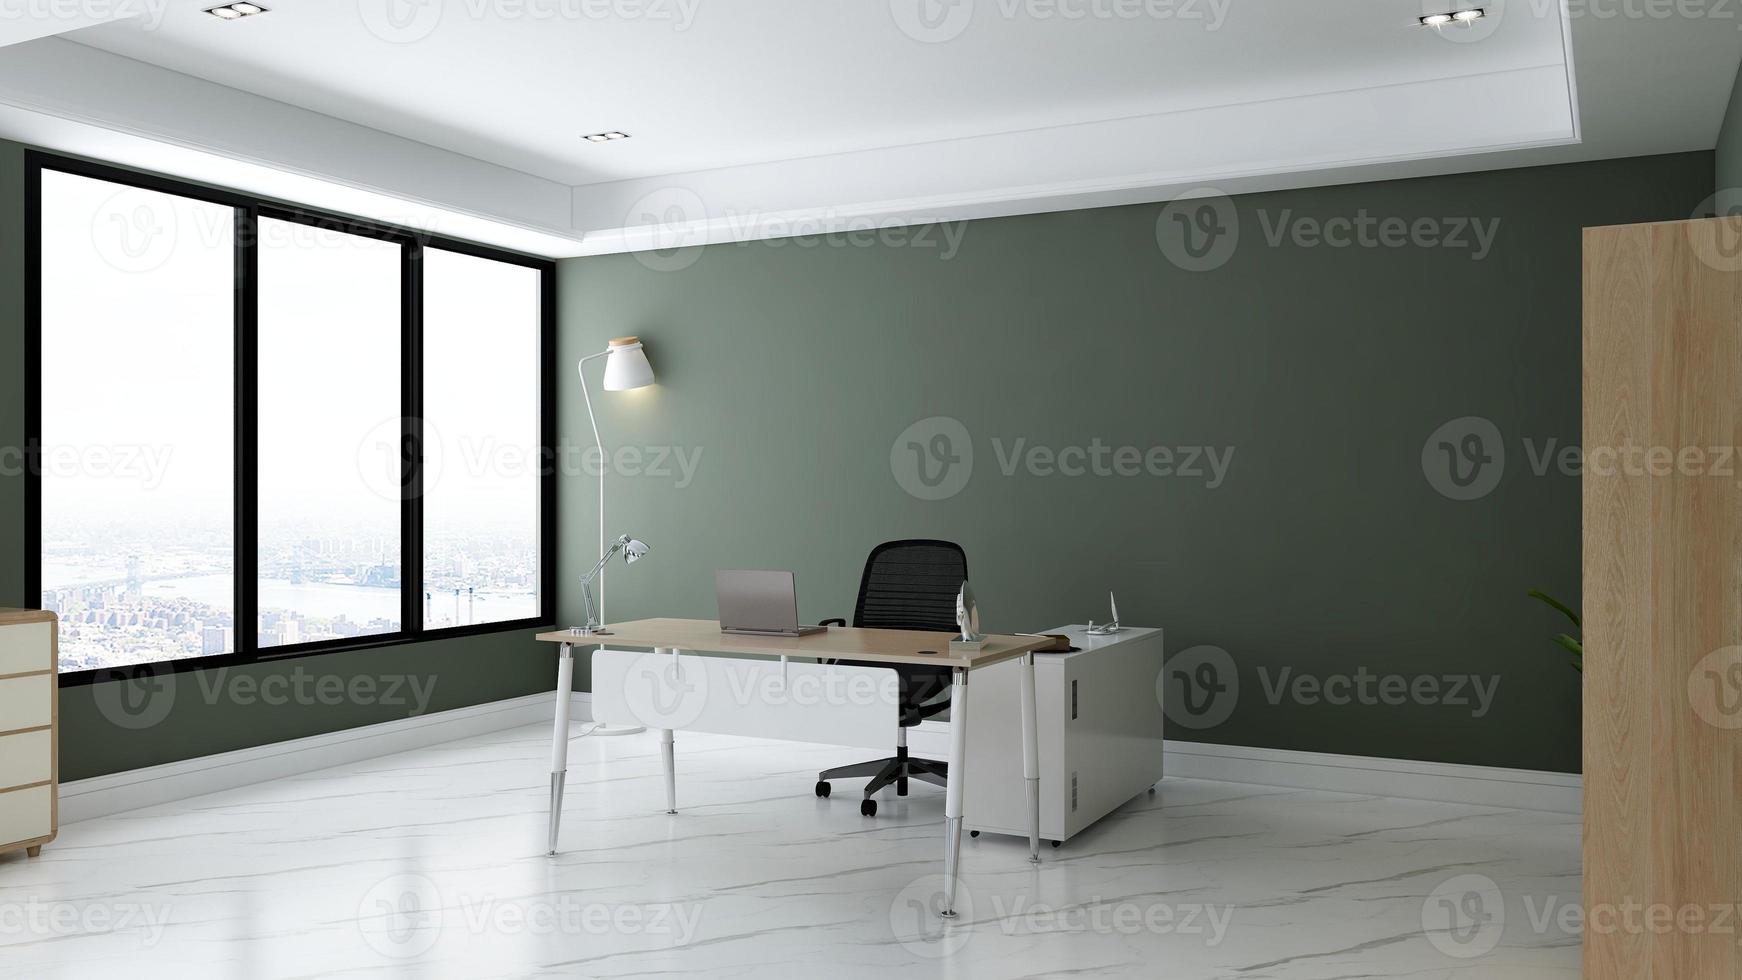 Sala minimalista de oficina de render 3d con interior de diseño de madera foto